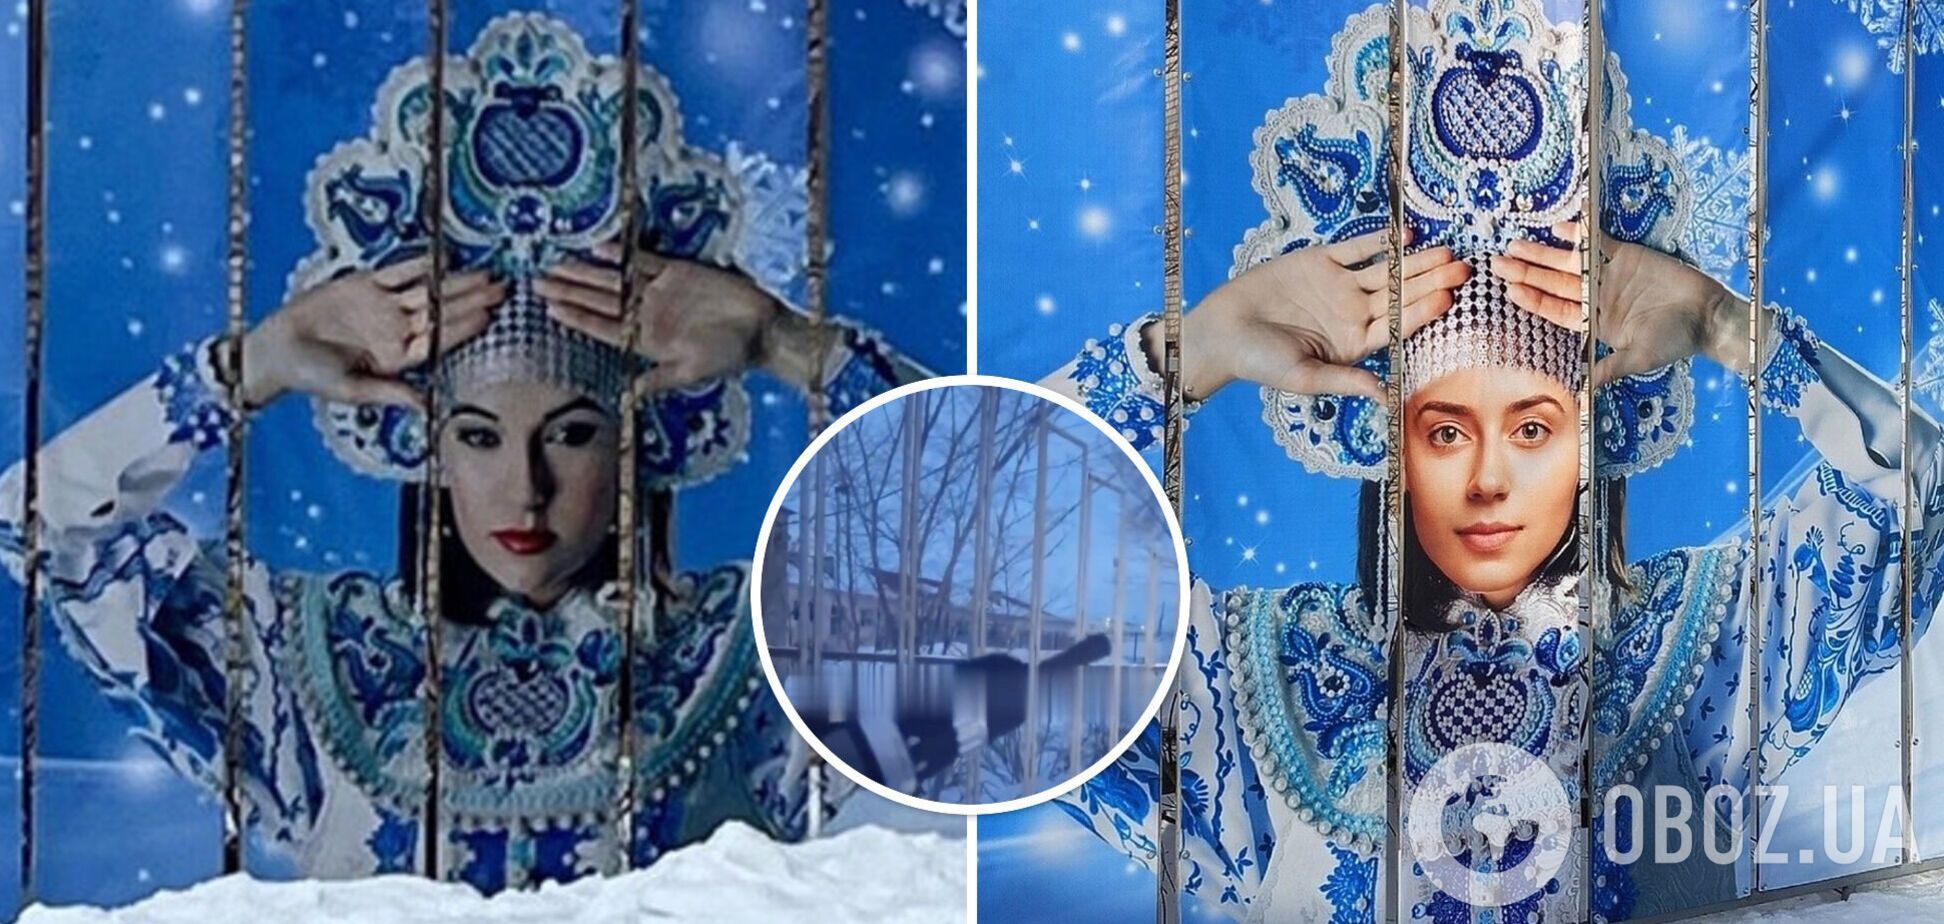 У РФ для банера використали обличчя Саші Грей і української моделі: розлючені росіяни підняли шум і змусили прибрати фото